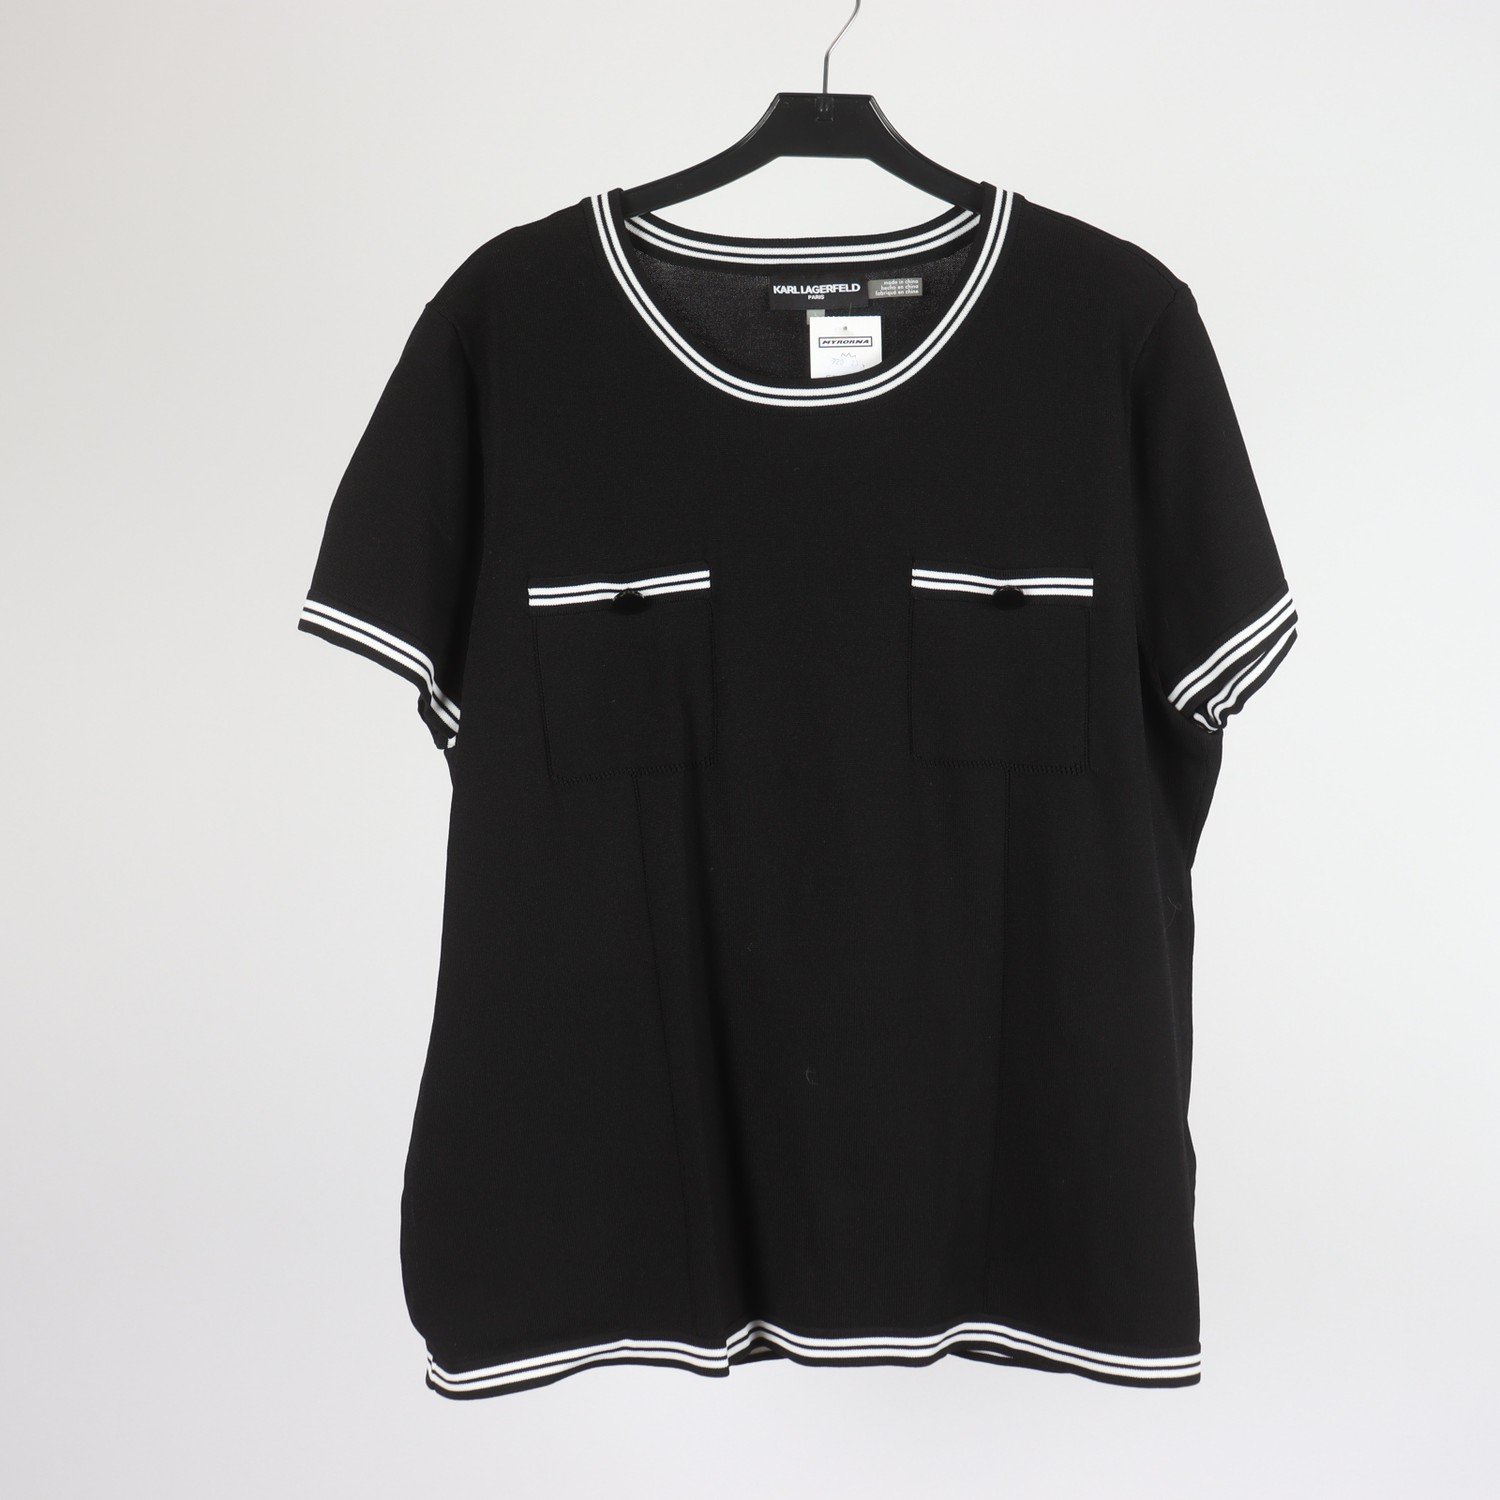 T-shirt, Karl Lagerfeld, svart, stl. L